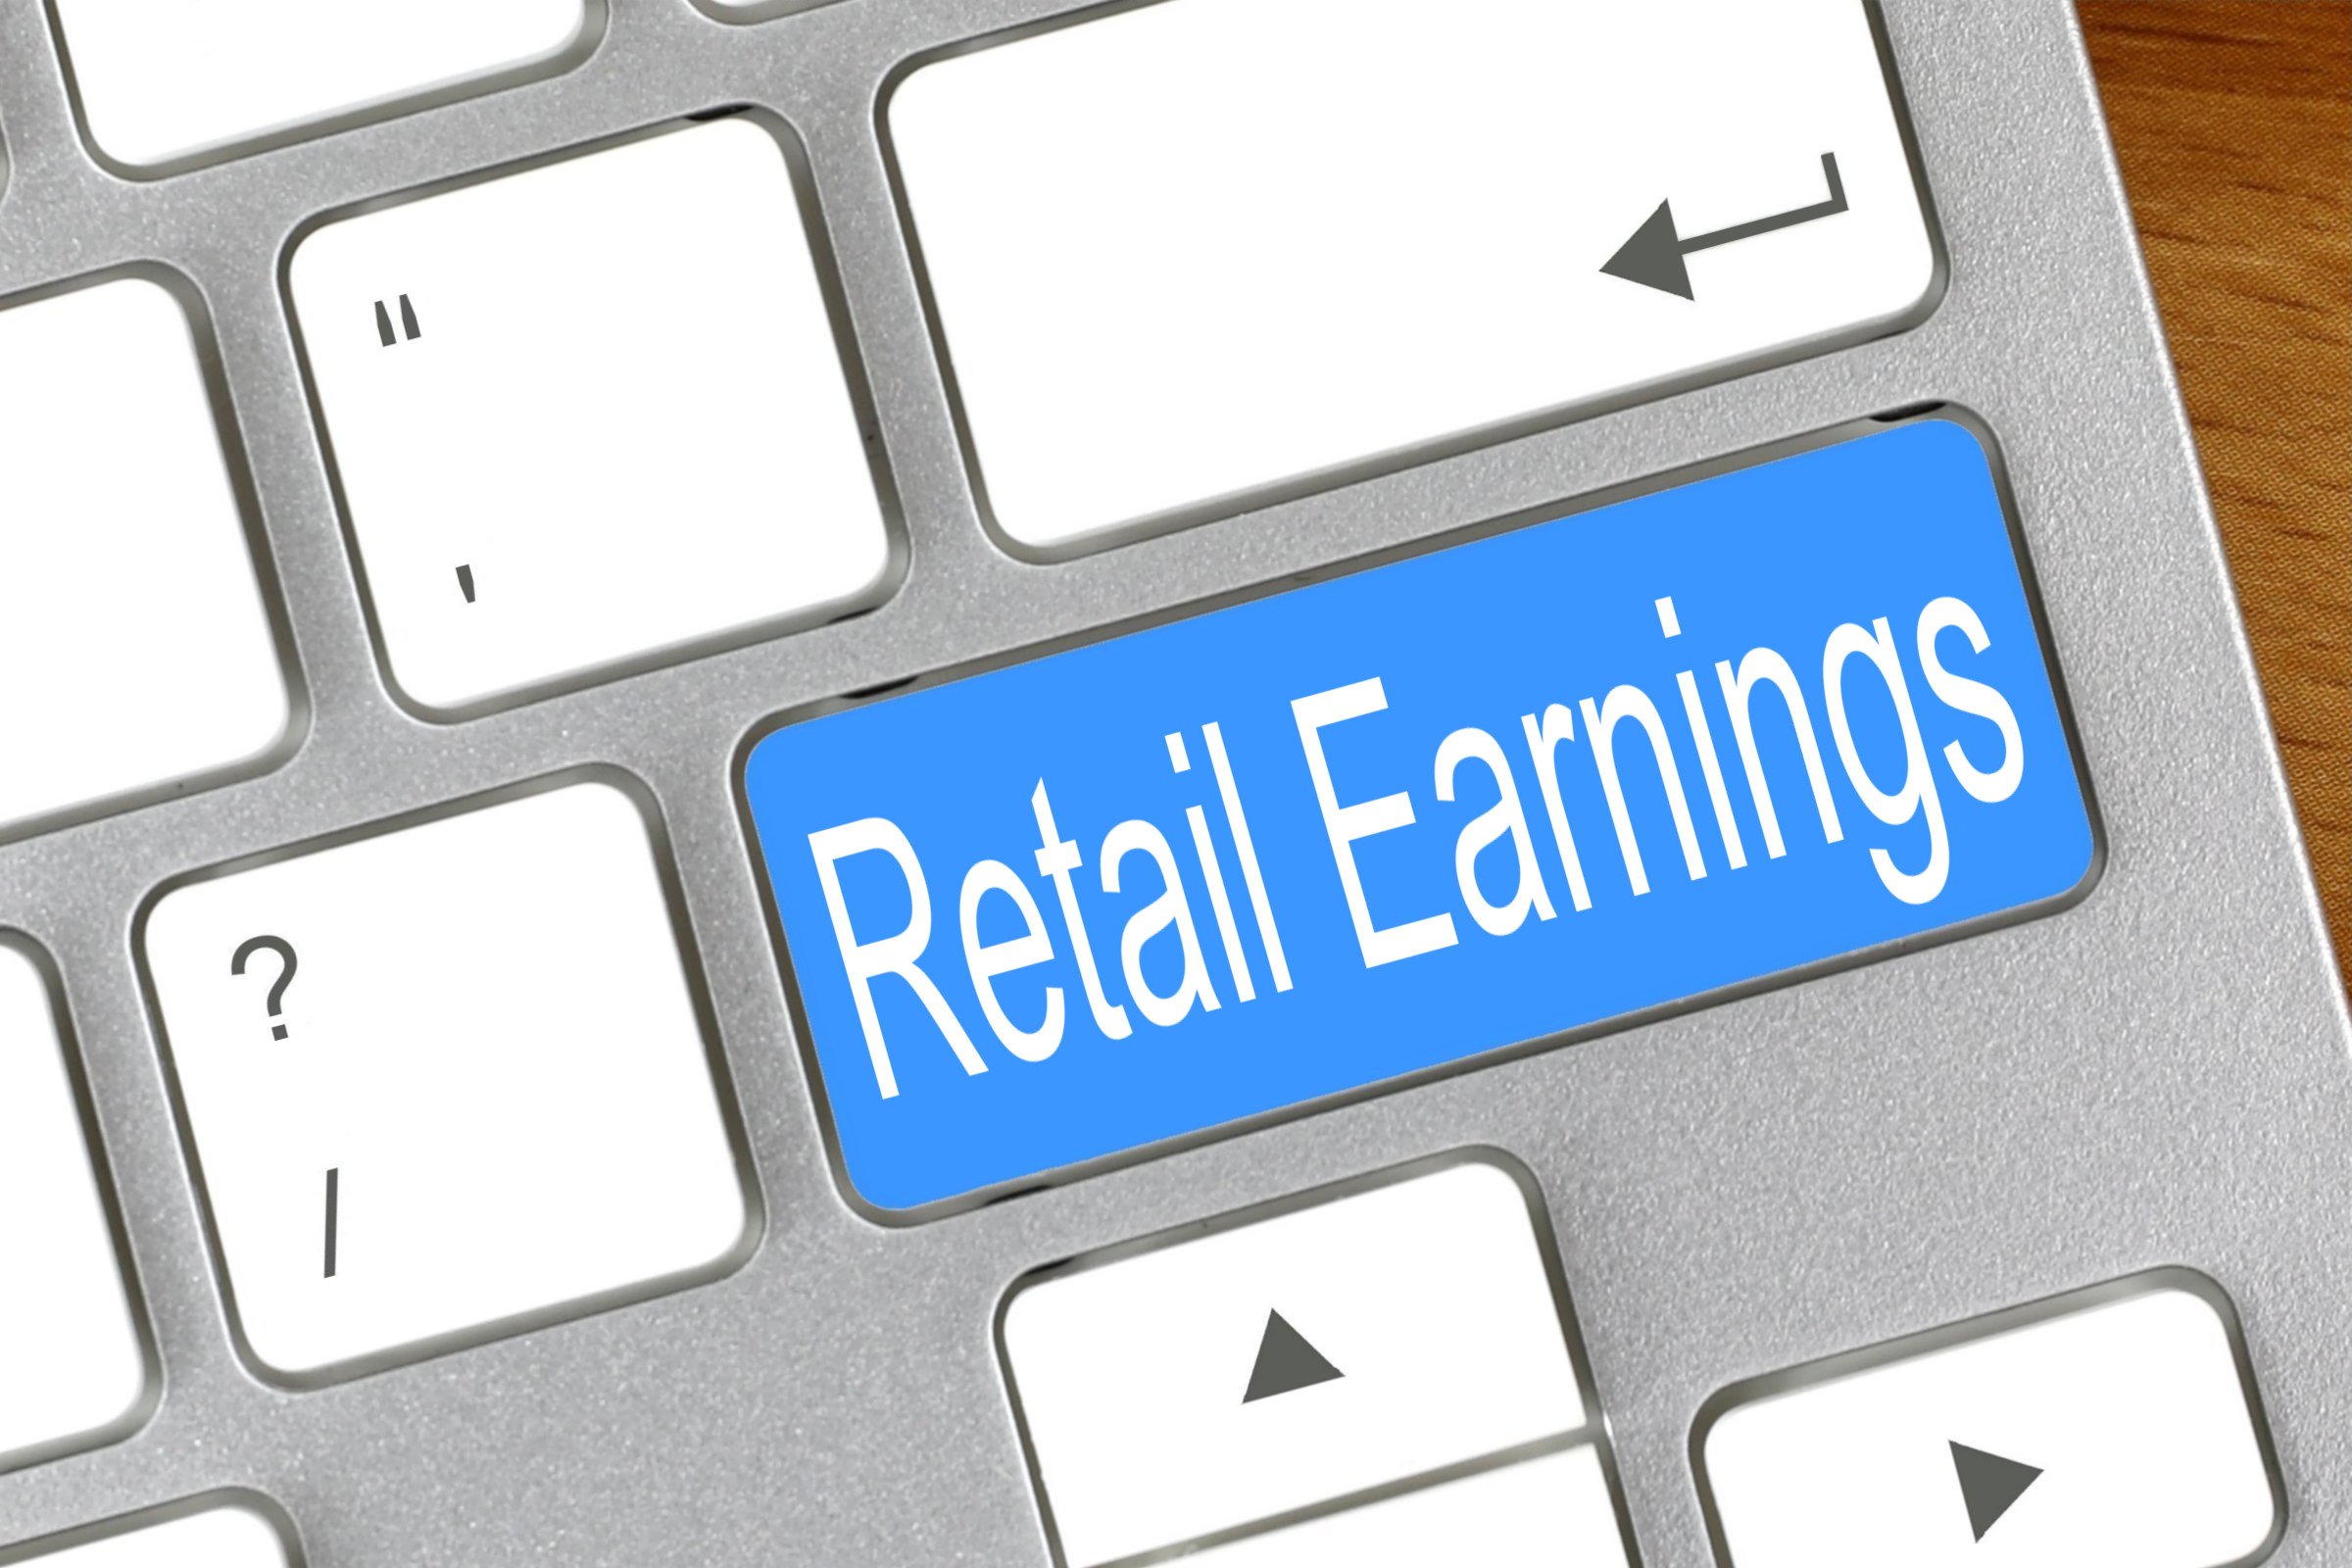 retail earnings